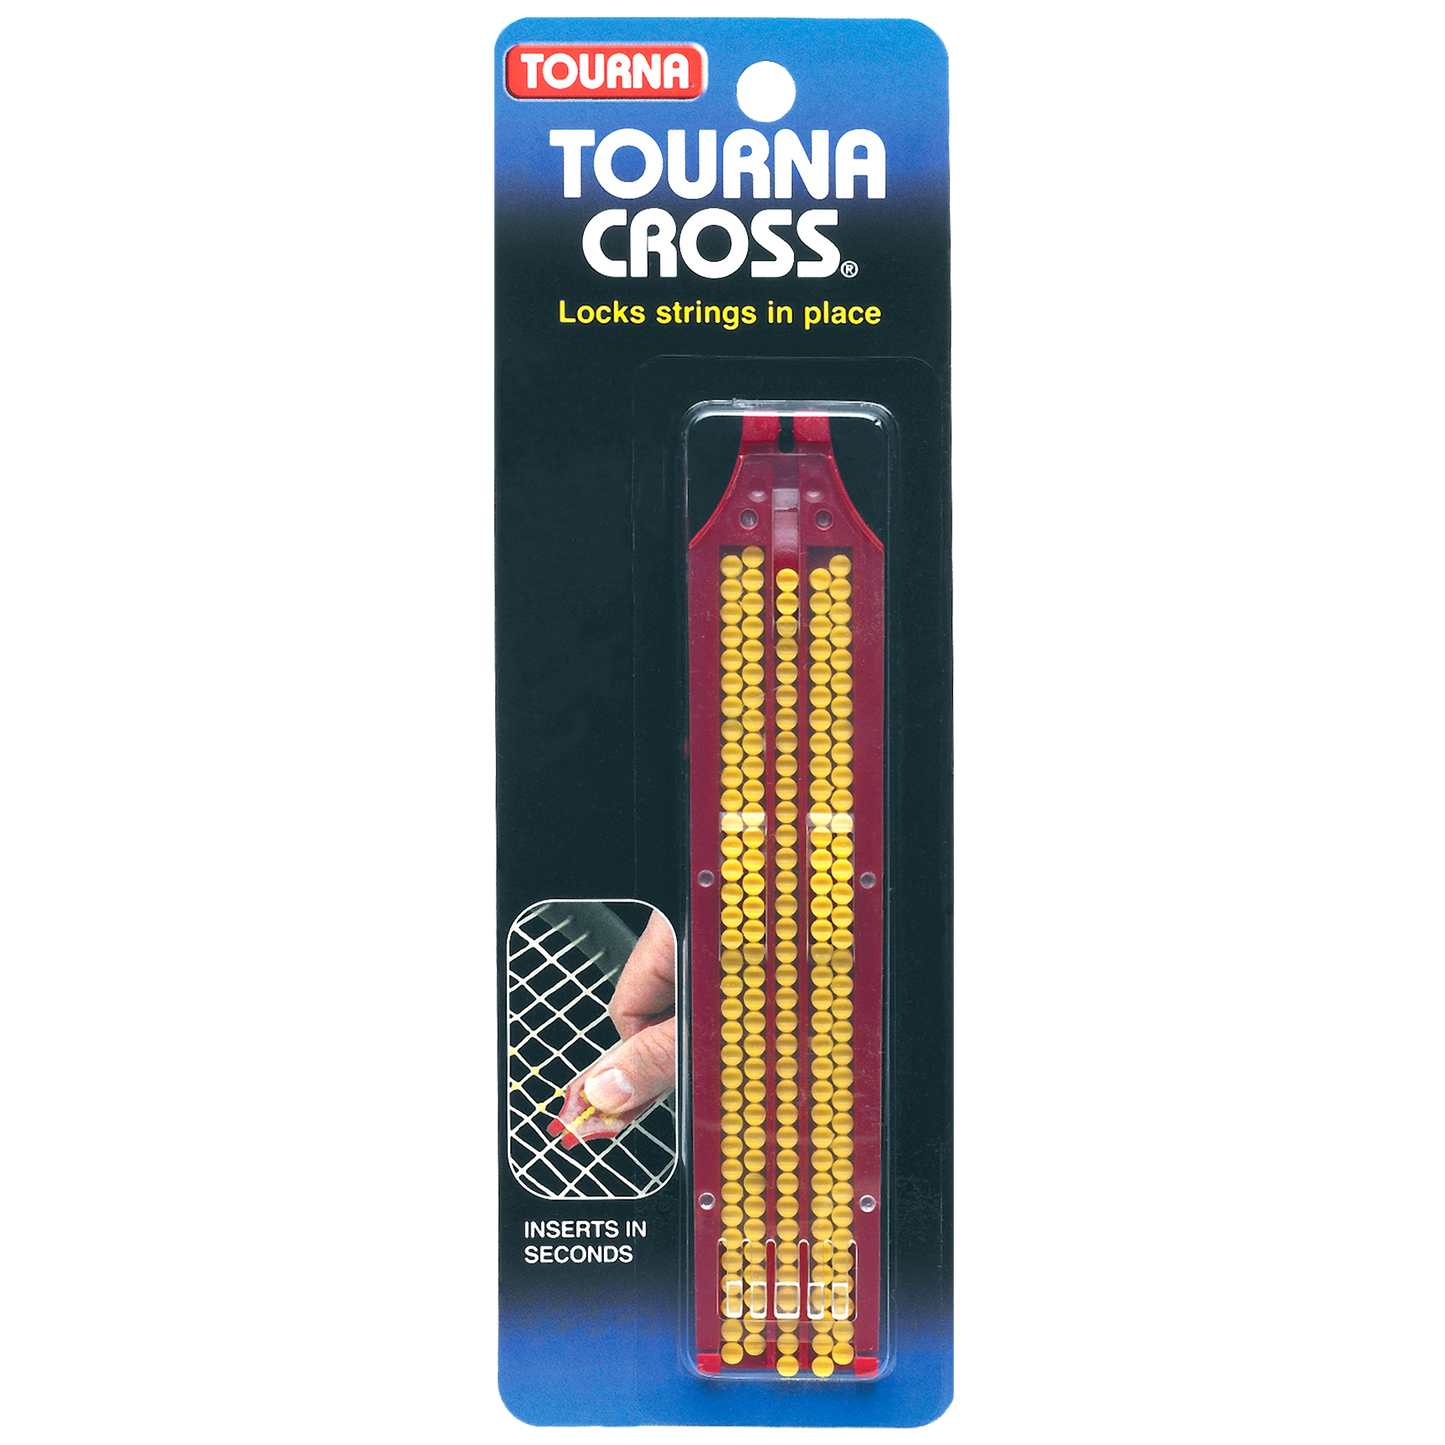 Tourna Cross